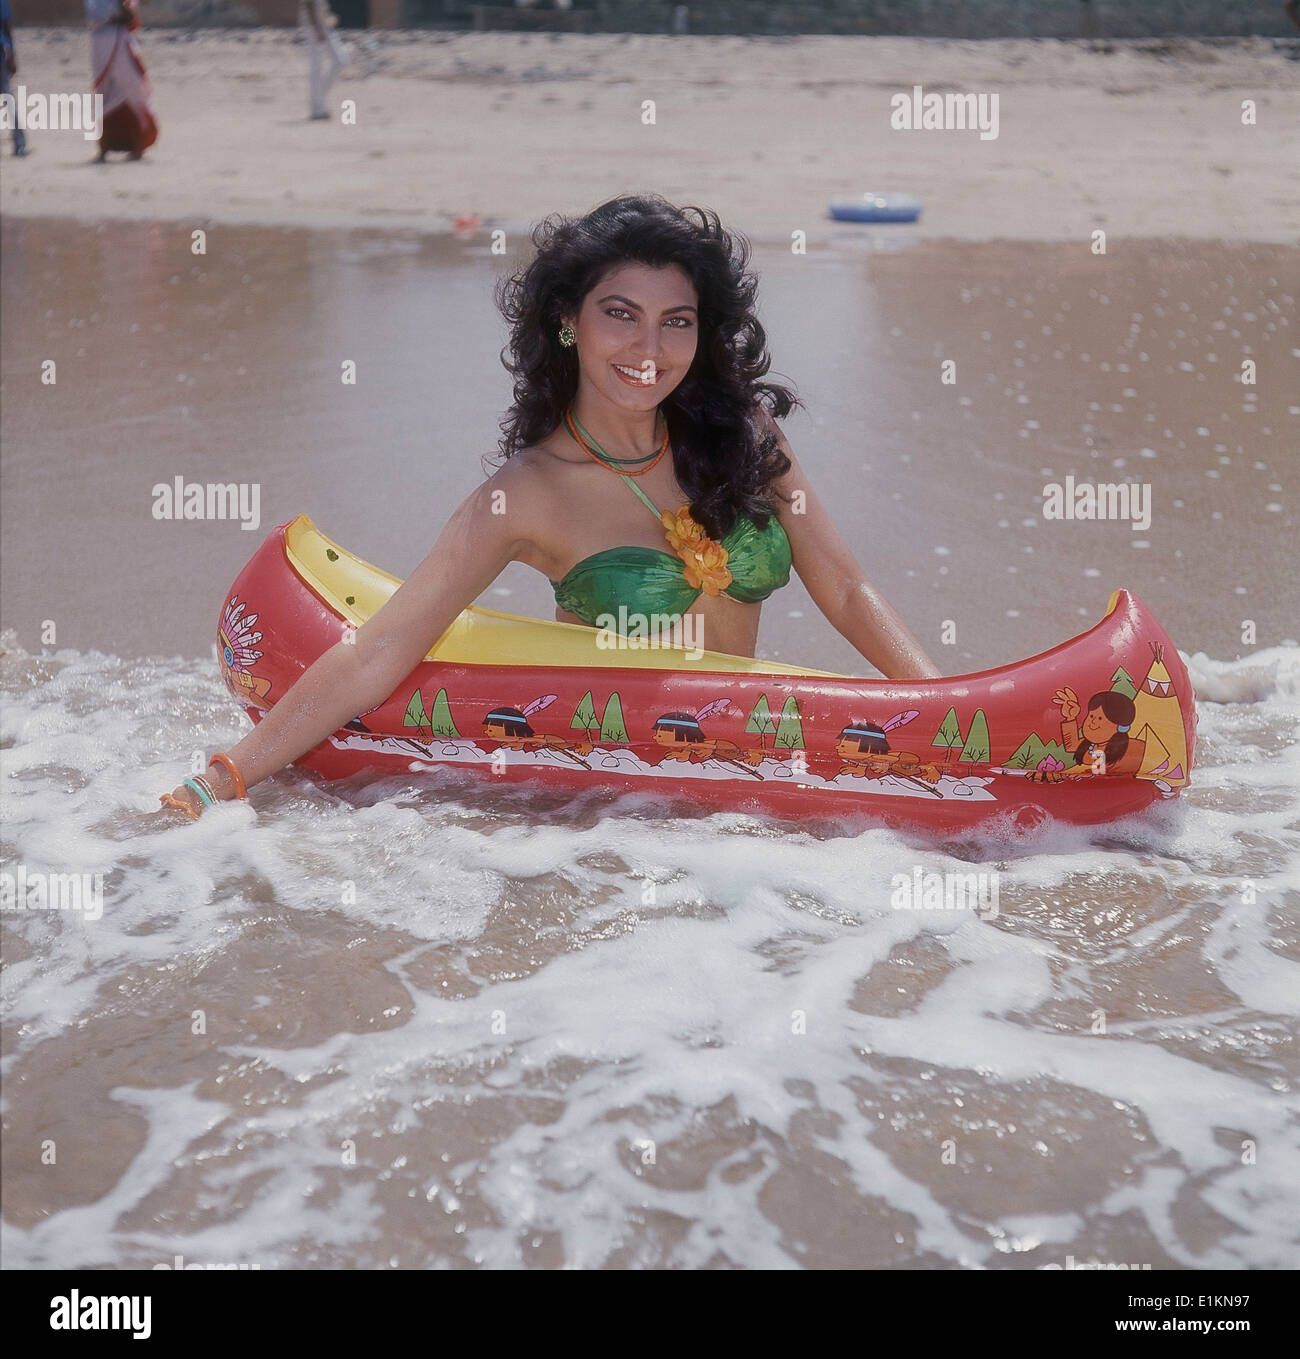 Kimi Katkar, attrice e modella cinematografica indiana, immagine vecchia d'epoca degli anni '80 Foto Stock